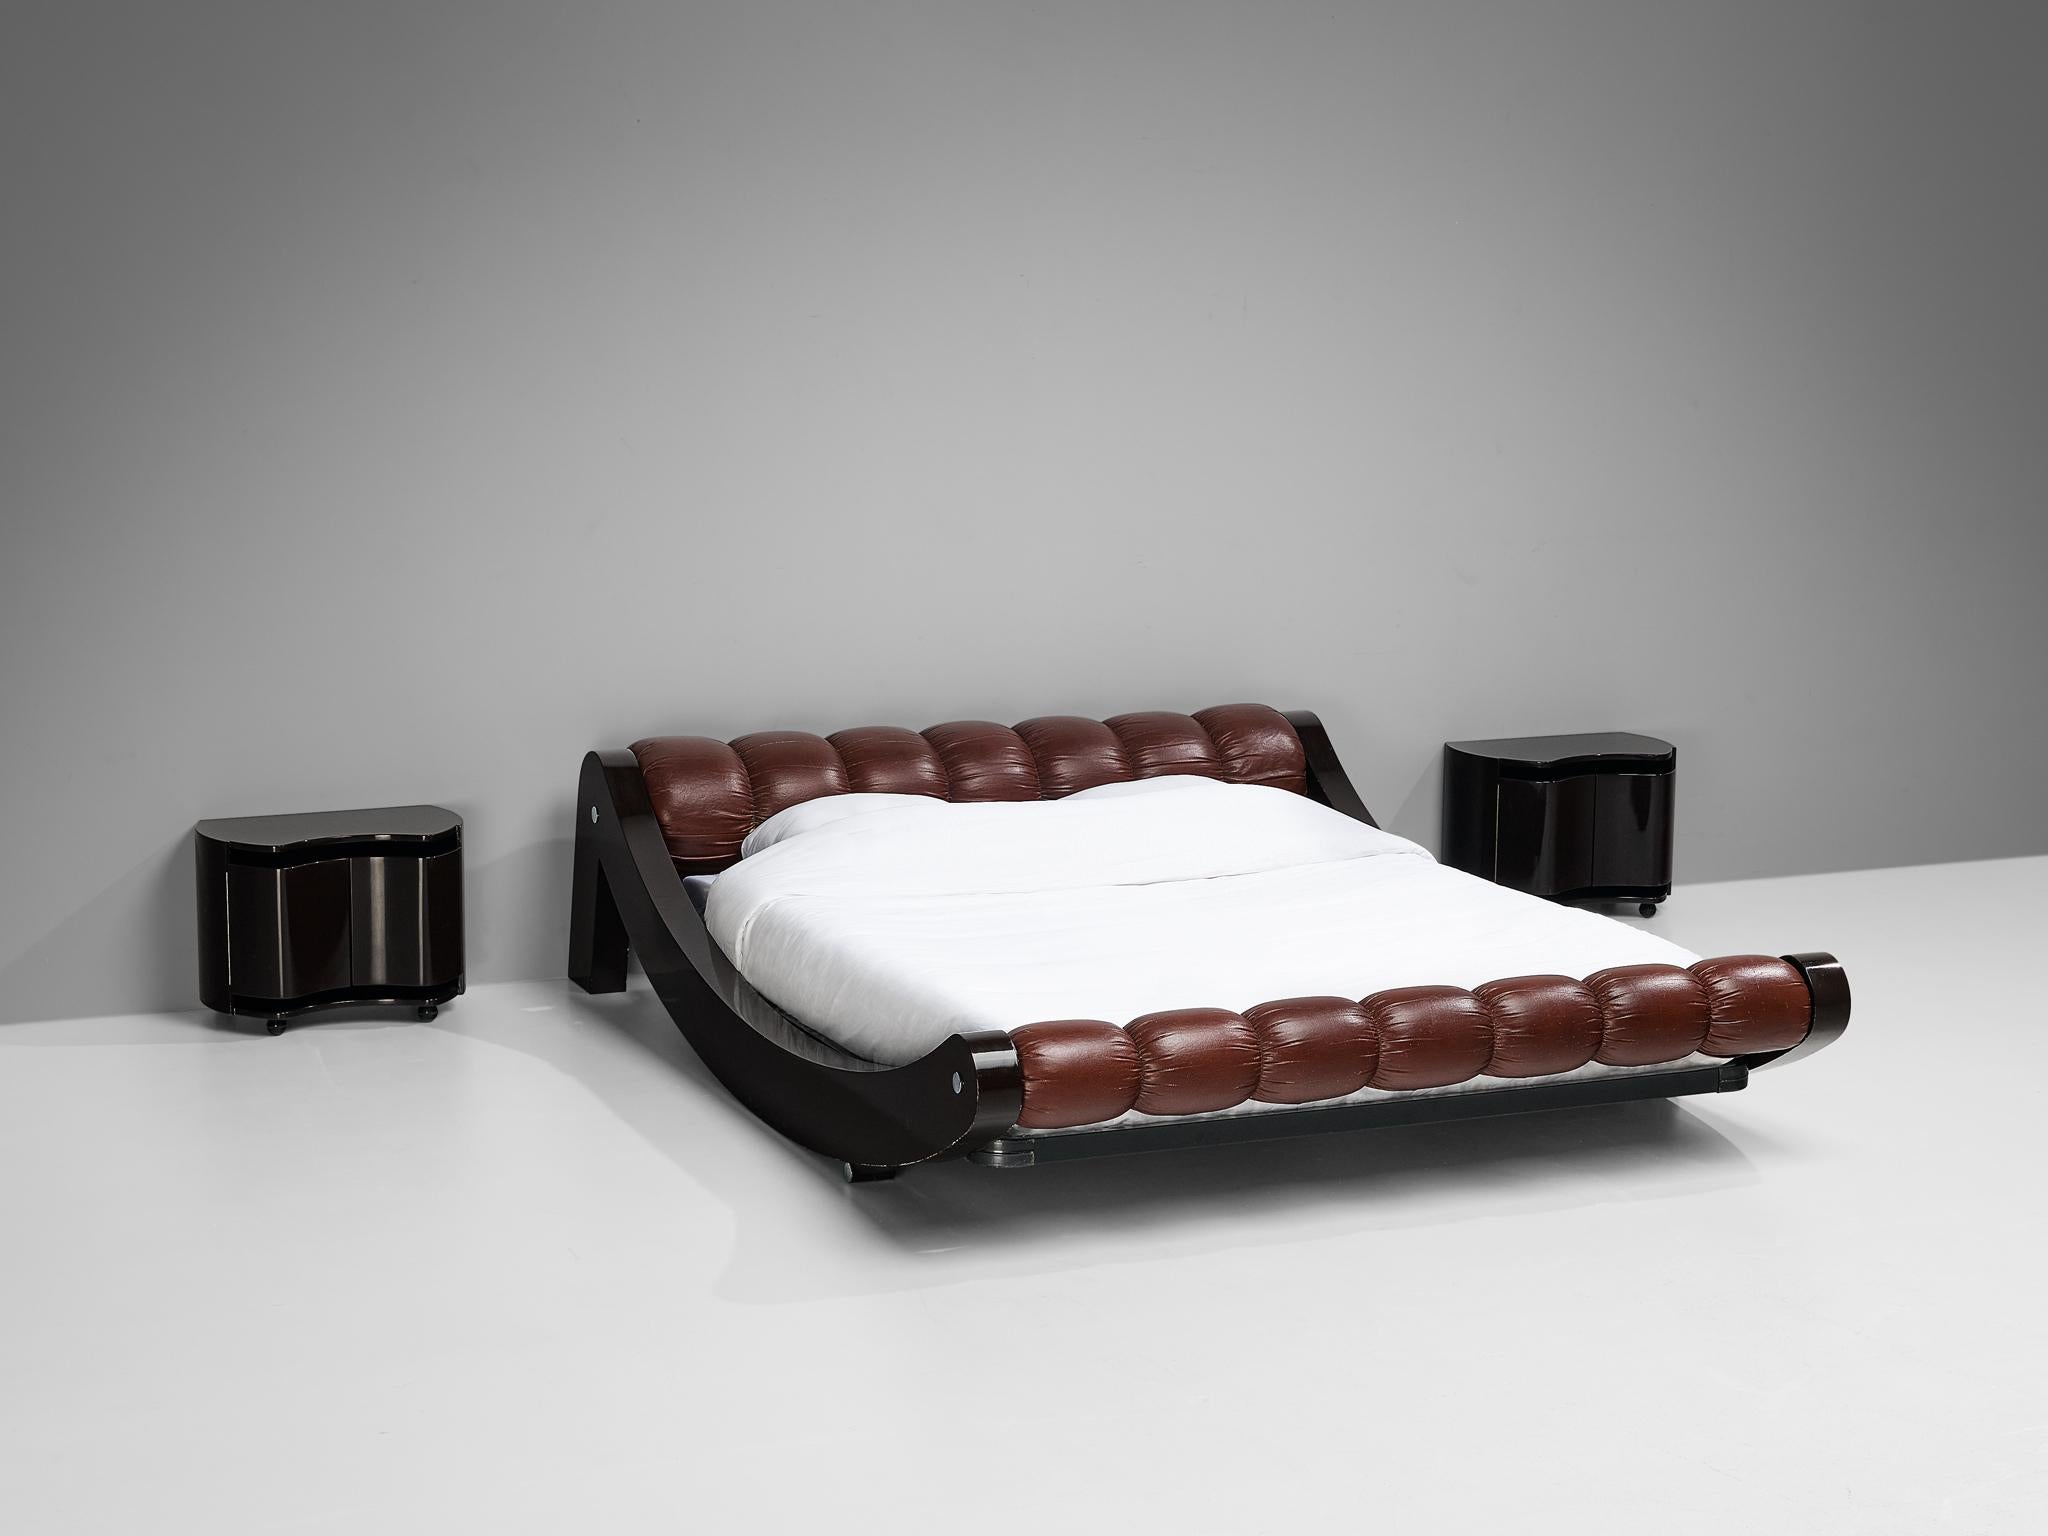 Benatti, 'Boomerang' französisches Bett, Holz, lackiertes Holz, Leder, Italien, Design 1972

Seltenes und monumentales italienisches Doppelbett aus den 1970er Jahren. Dieses 'Boomerang'-Bett des Herstellers Benatti zeigt alle Merkmale des Designs